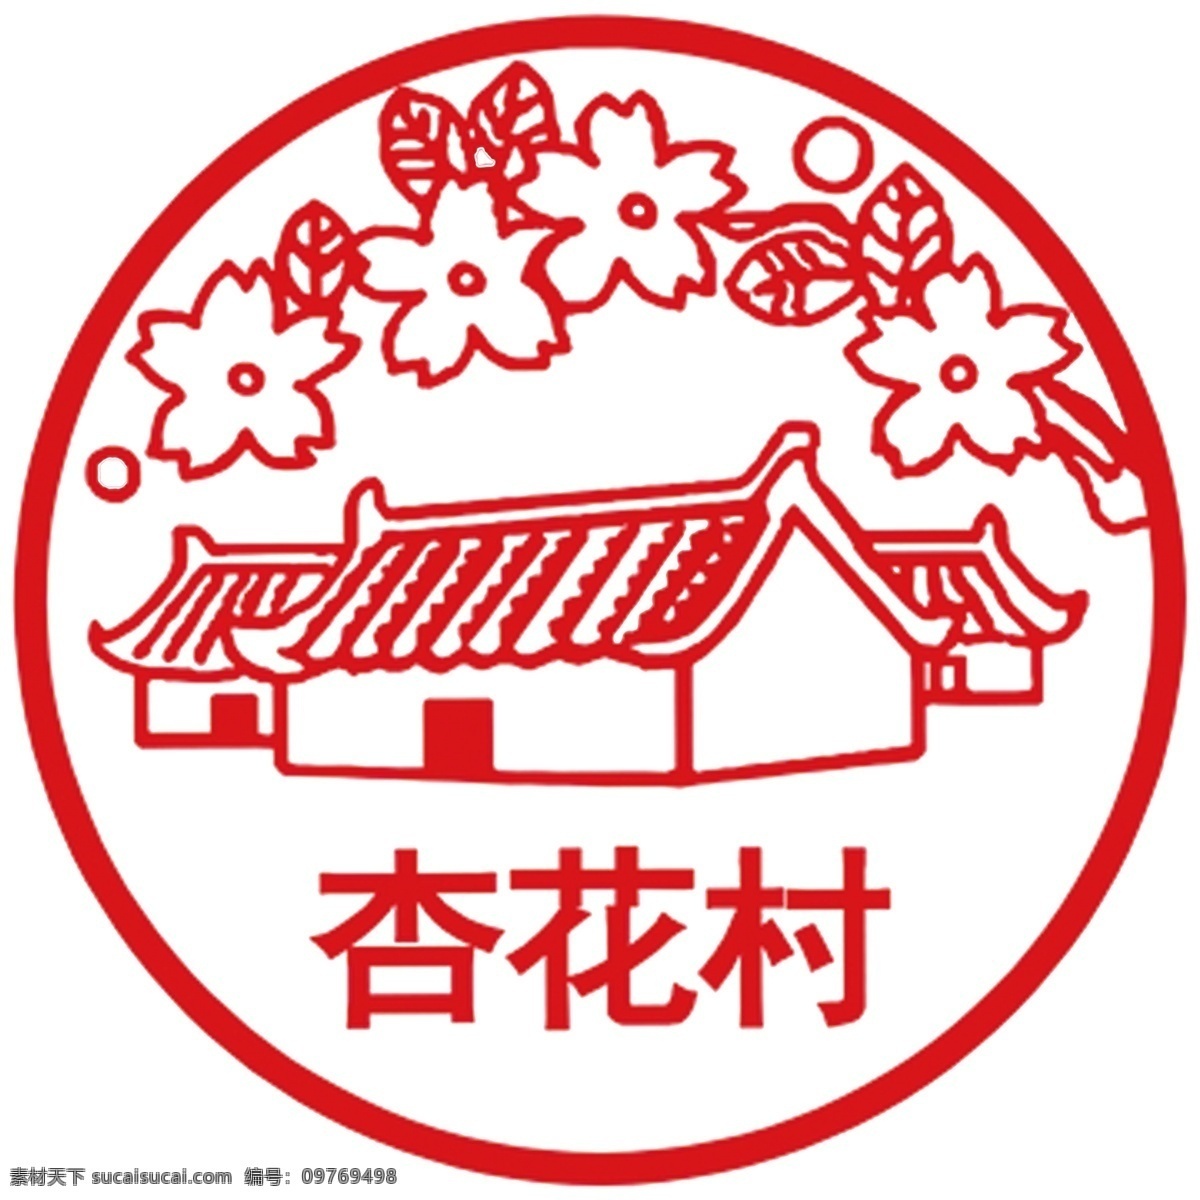 名酒 标志 系列 杏花村 商标文化 标志图标 企业 logo